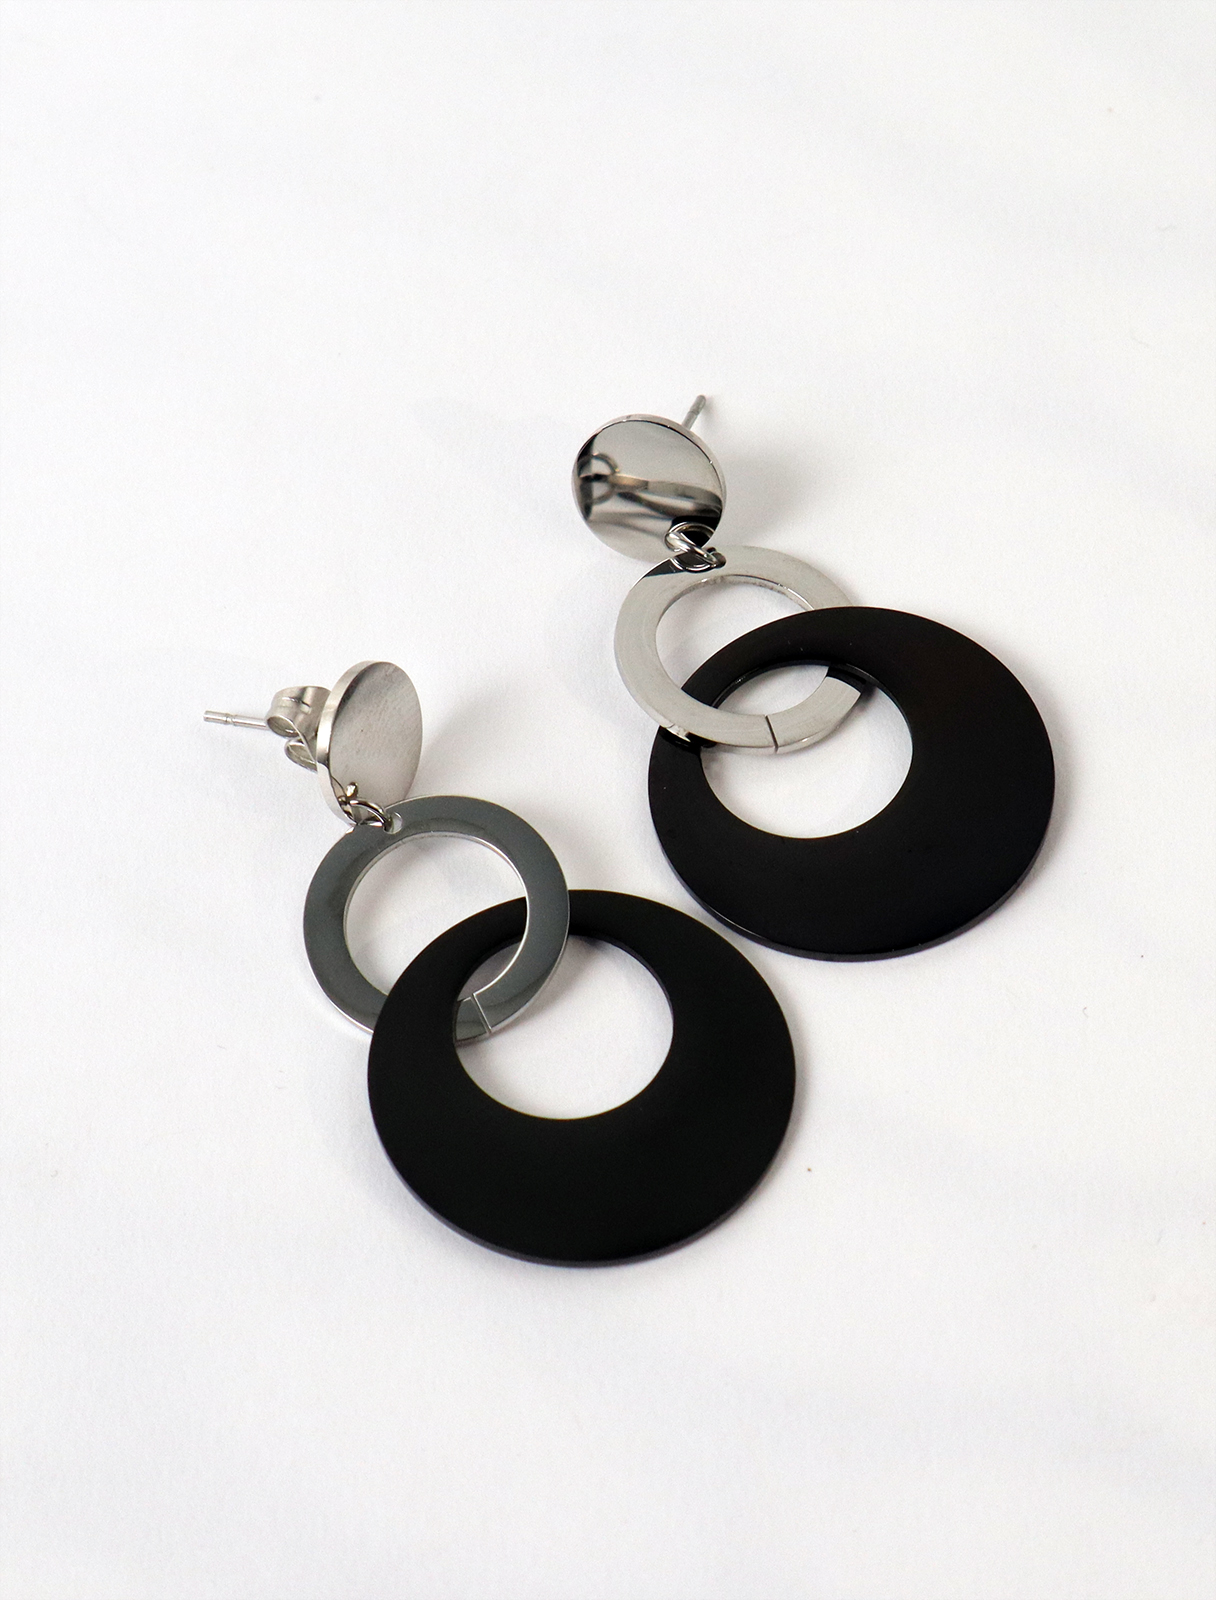 Drop earrings with interlocking rings